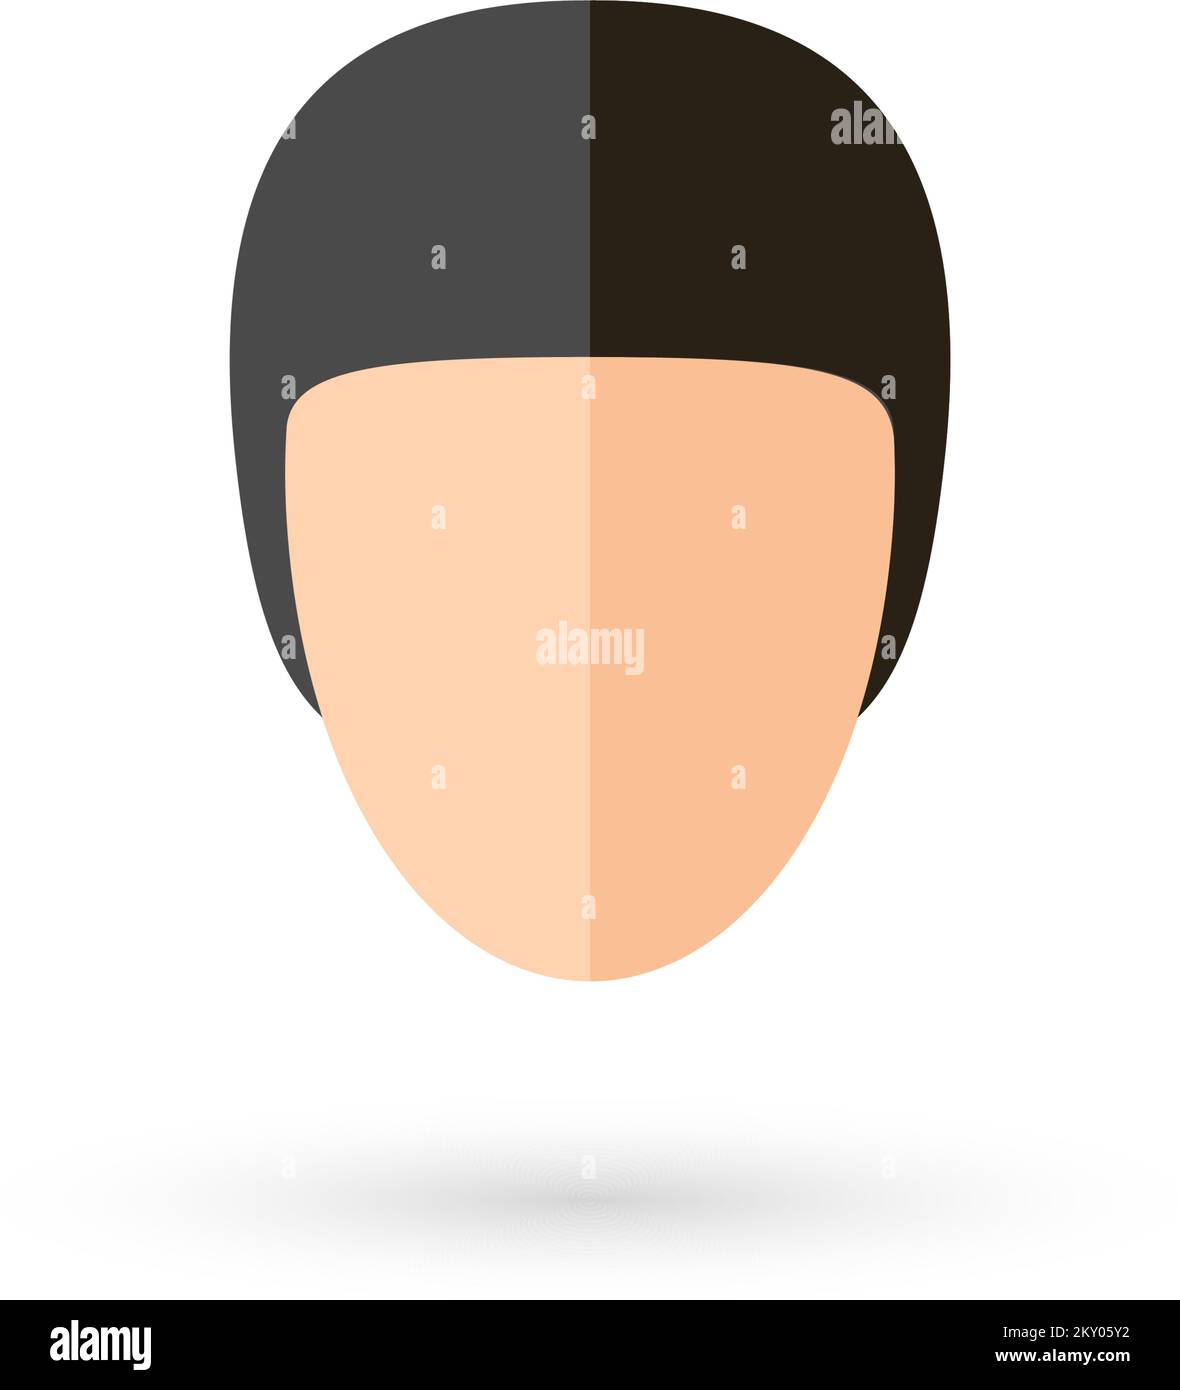 Hombre persona sin rostro Jefe Avatar icono con peinado negro. Ilustración aislada y plana Ilustración del Vector